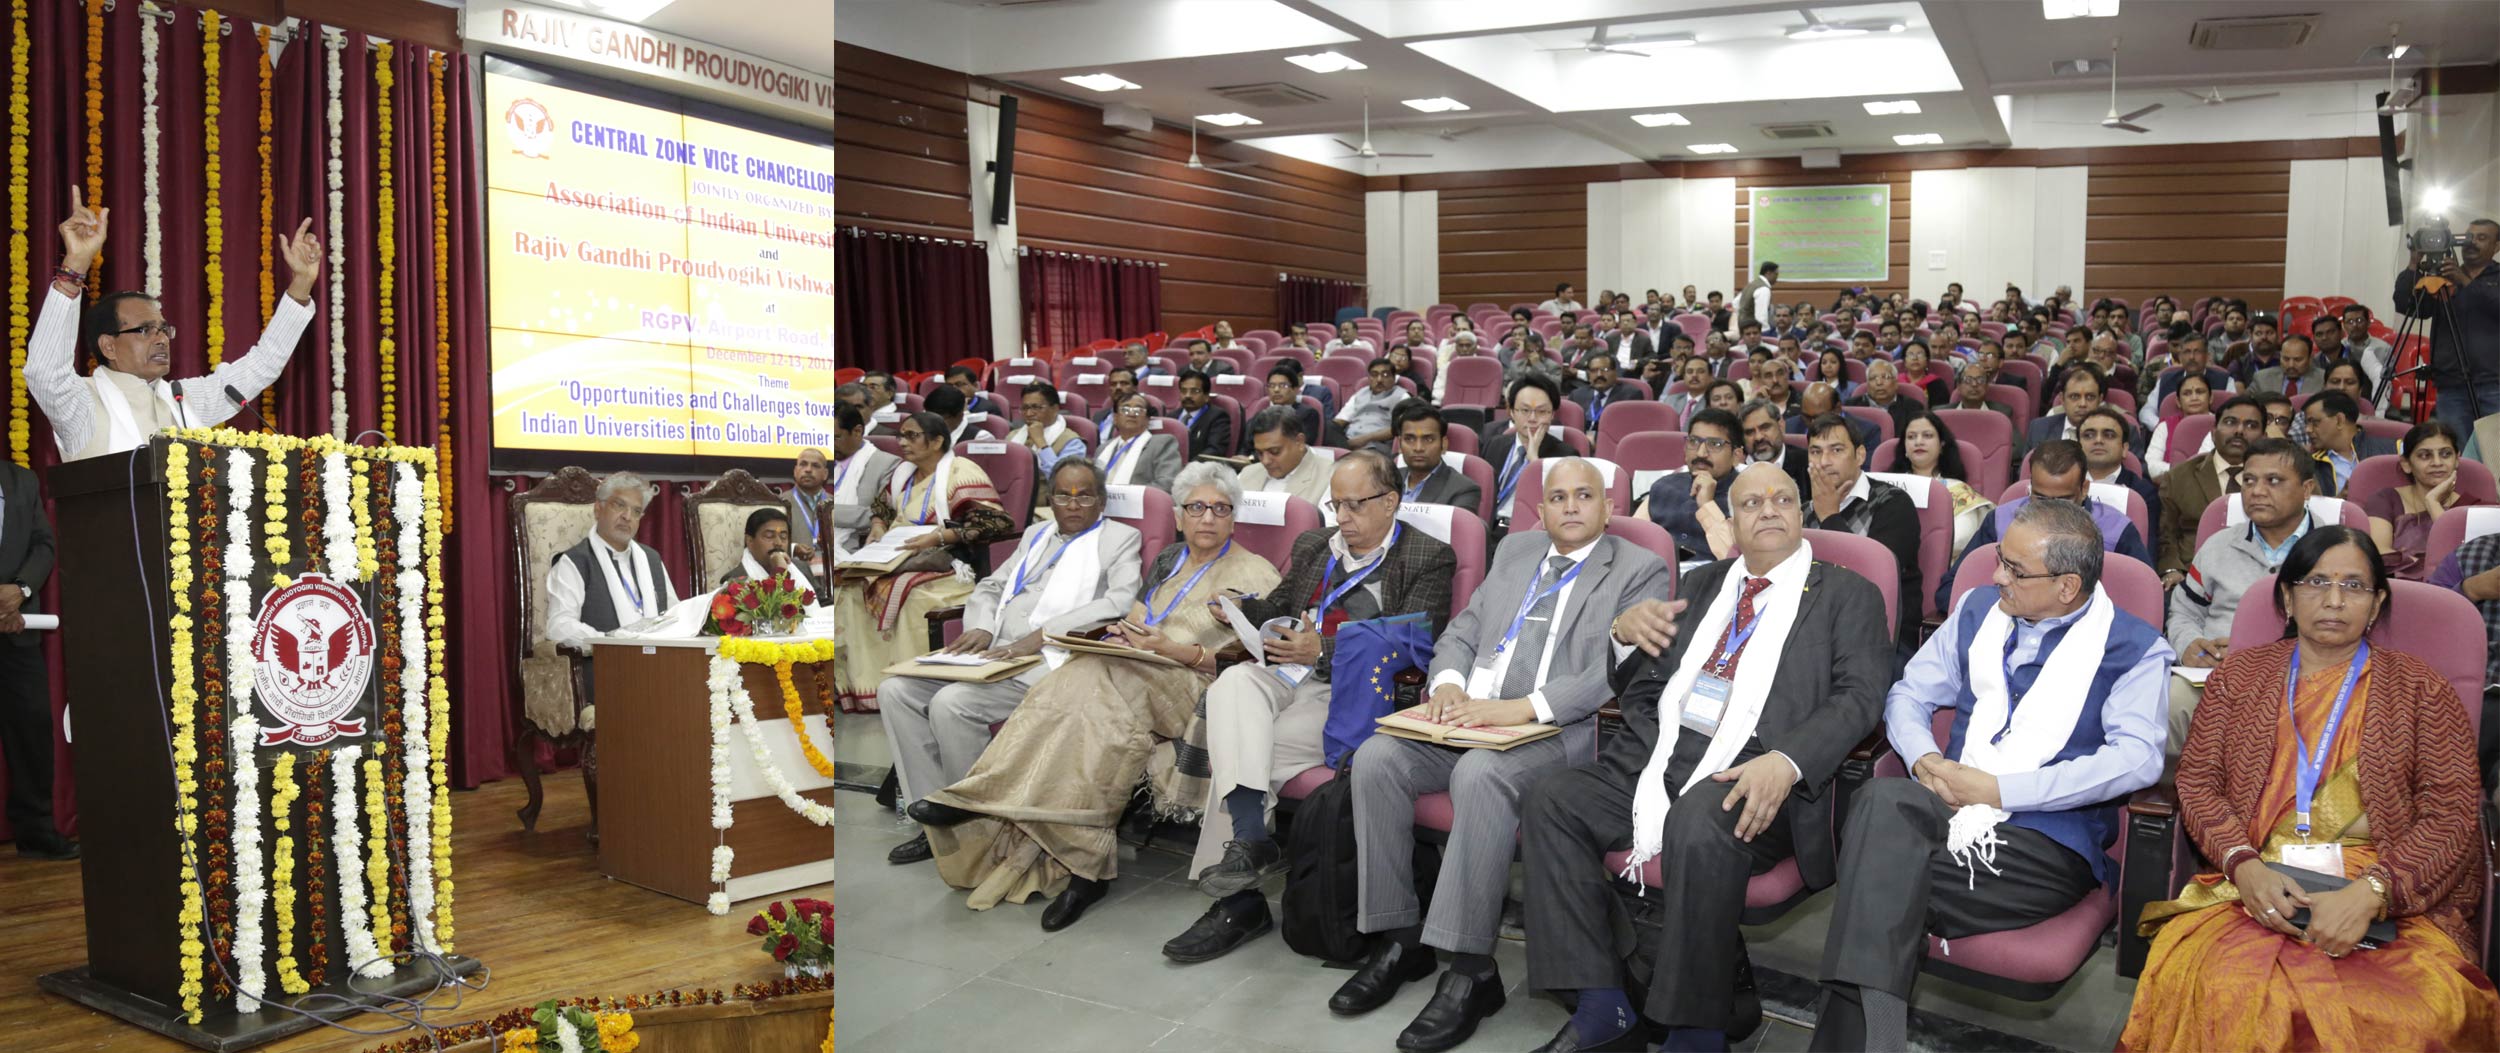 कुलपतियों का सम्मेलन: 37 पेटेंट के मालिक डाॅ. नारायण गेहलोत ने बताई हकीकत, बोले-  रिसर्च और इनोवेशन में भारतीय विश्वविद्यालयों का निवेश जीरो 